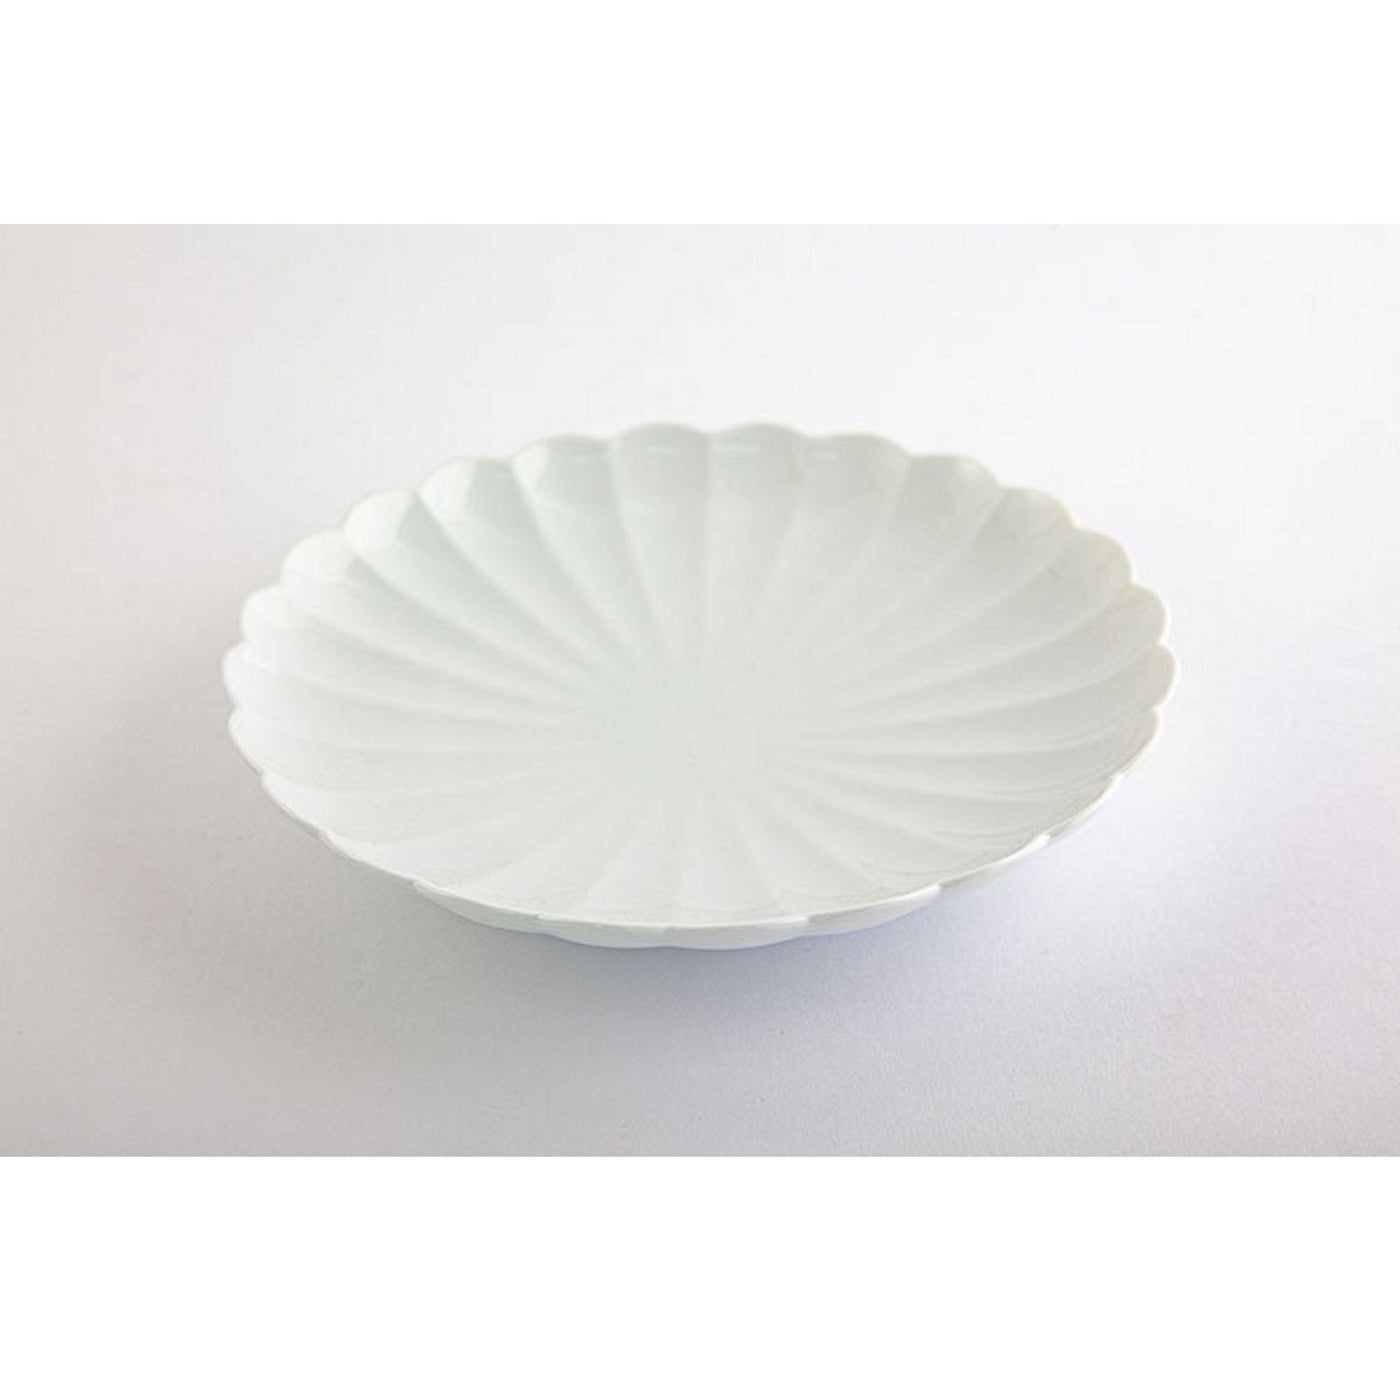 Japanese plate　White porcelain, "Kikuwari" chrysanthemum split